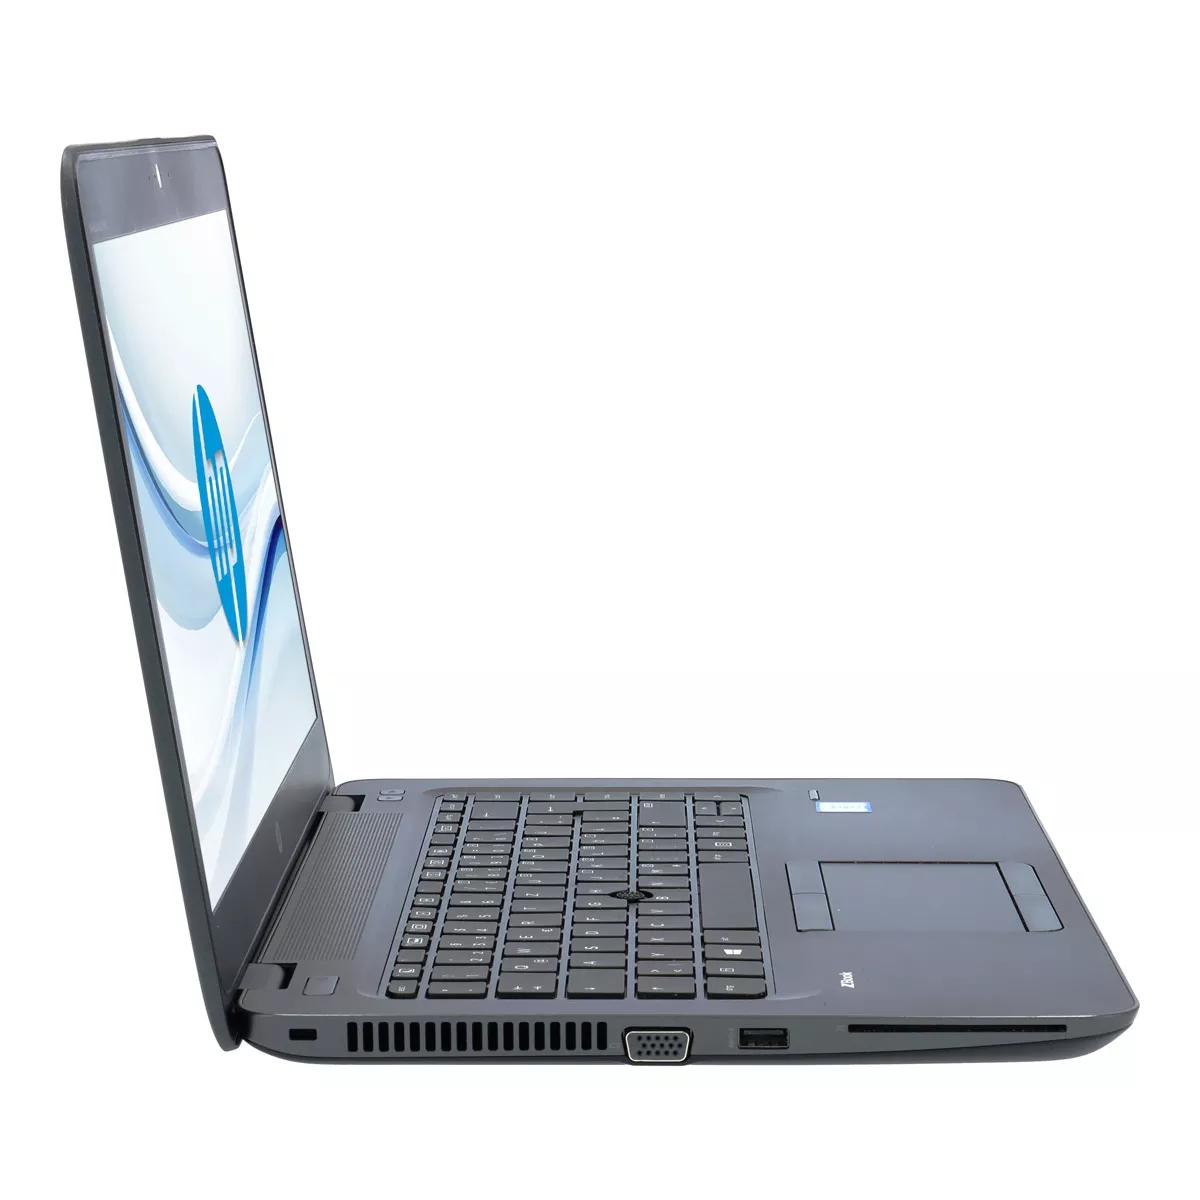 HP ZBook 15 G4 Core i7 7820HQ nVidia Quadro M2200M Full-HD 500 GB M.2 SSD Webcam A+